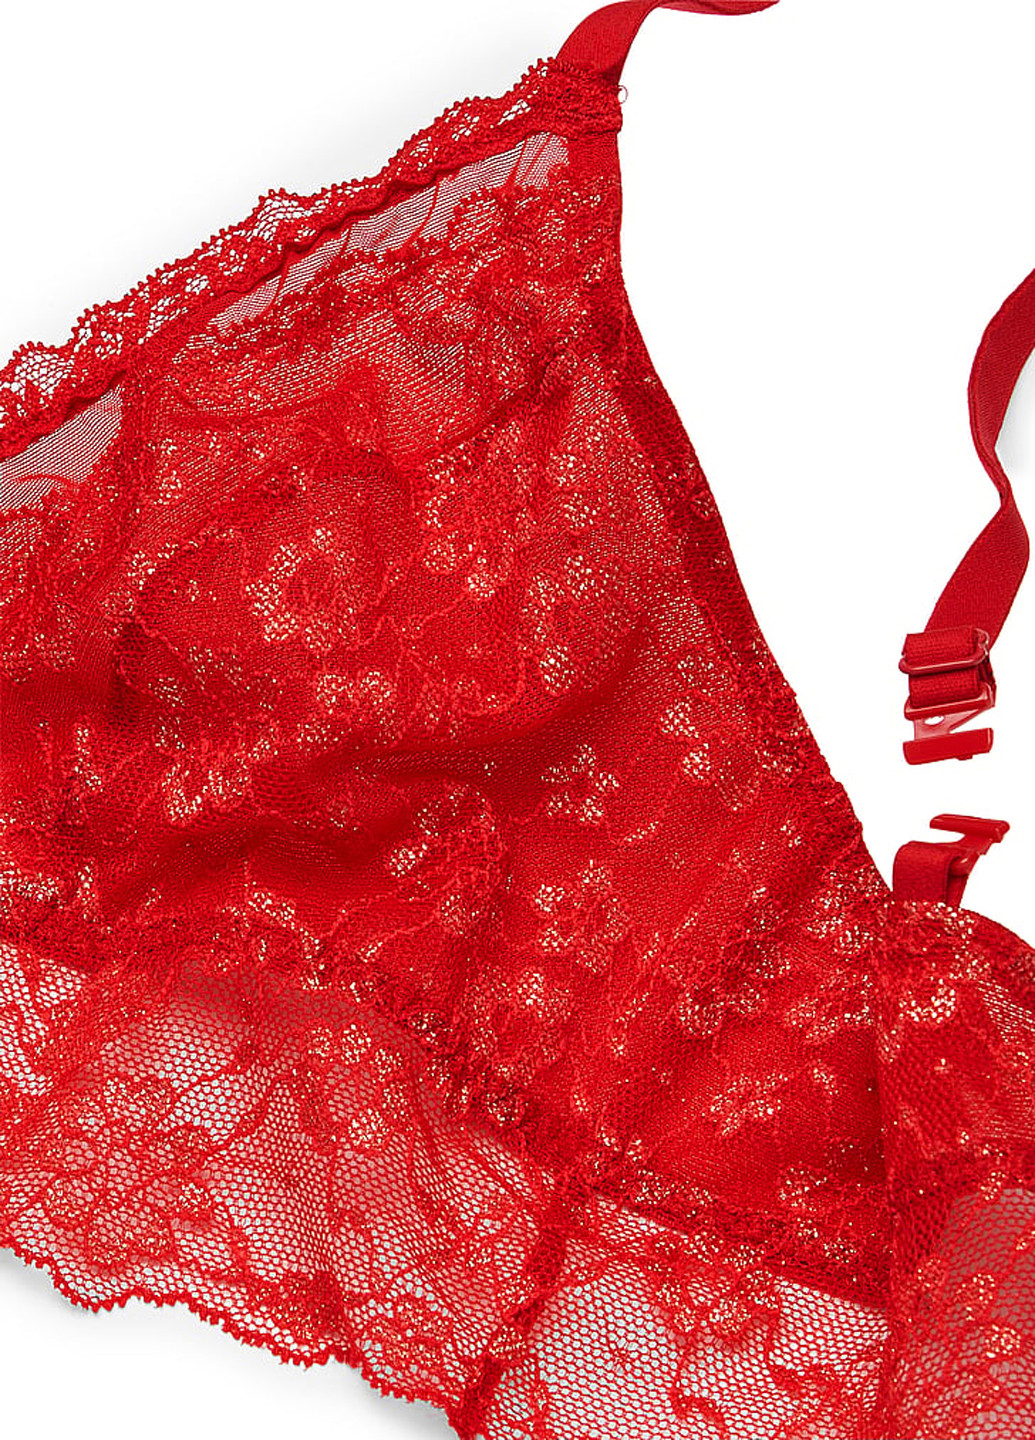 Красный демисезонный комплект белья (бюстгальтер, трусики) Victoria's Secret